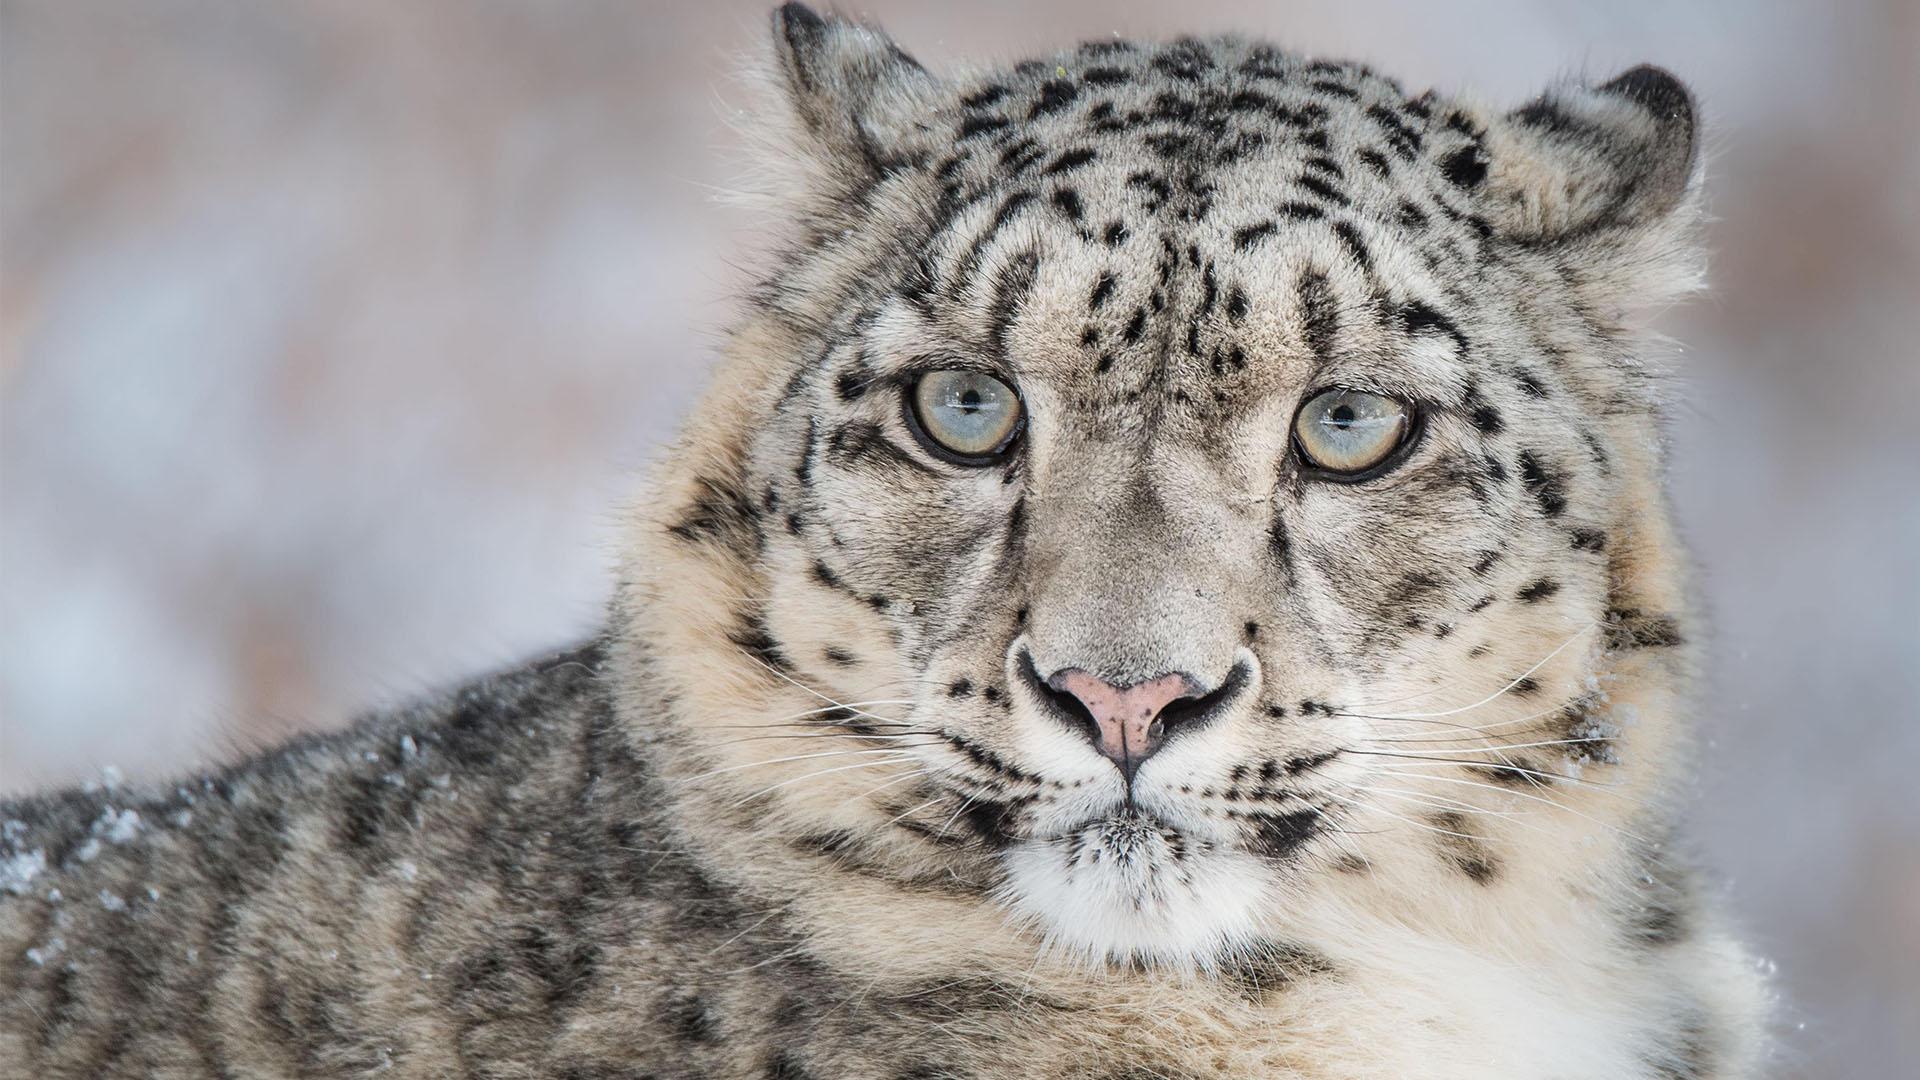 Un léopard des neiges (Panthera uncia) en gros plan.